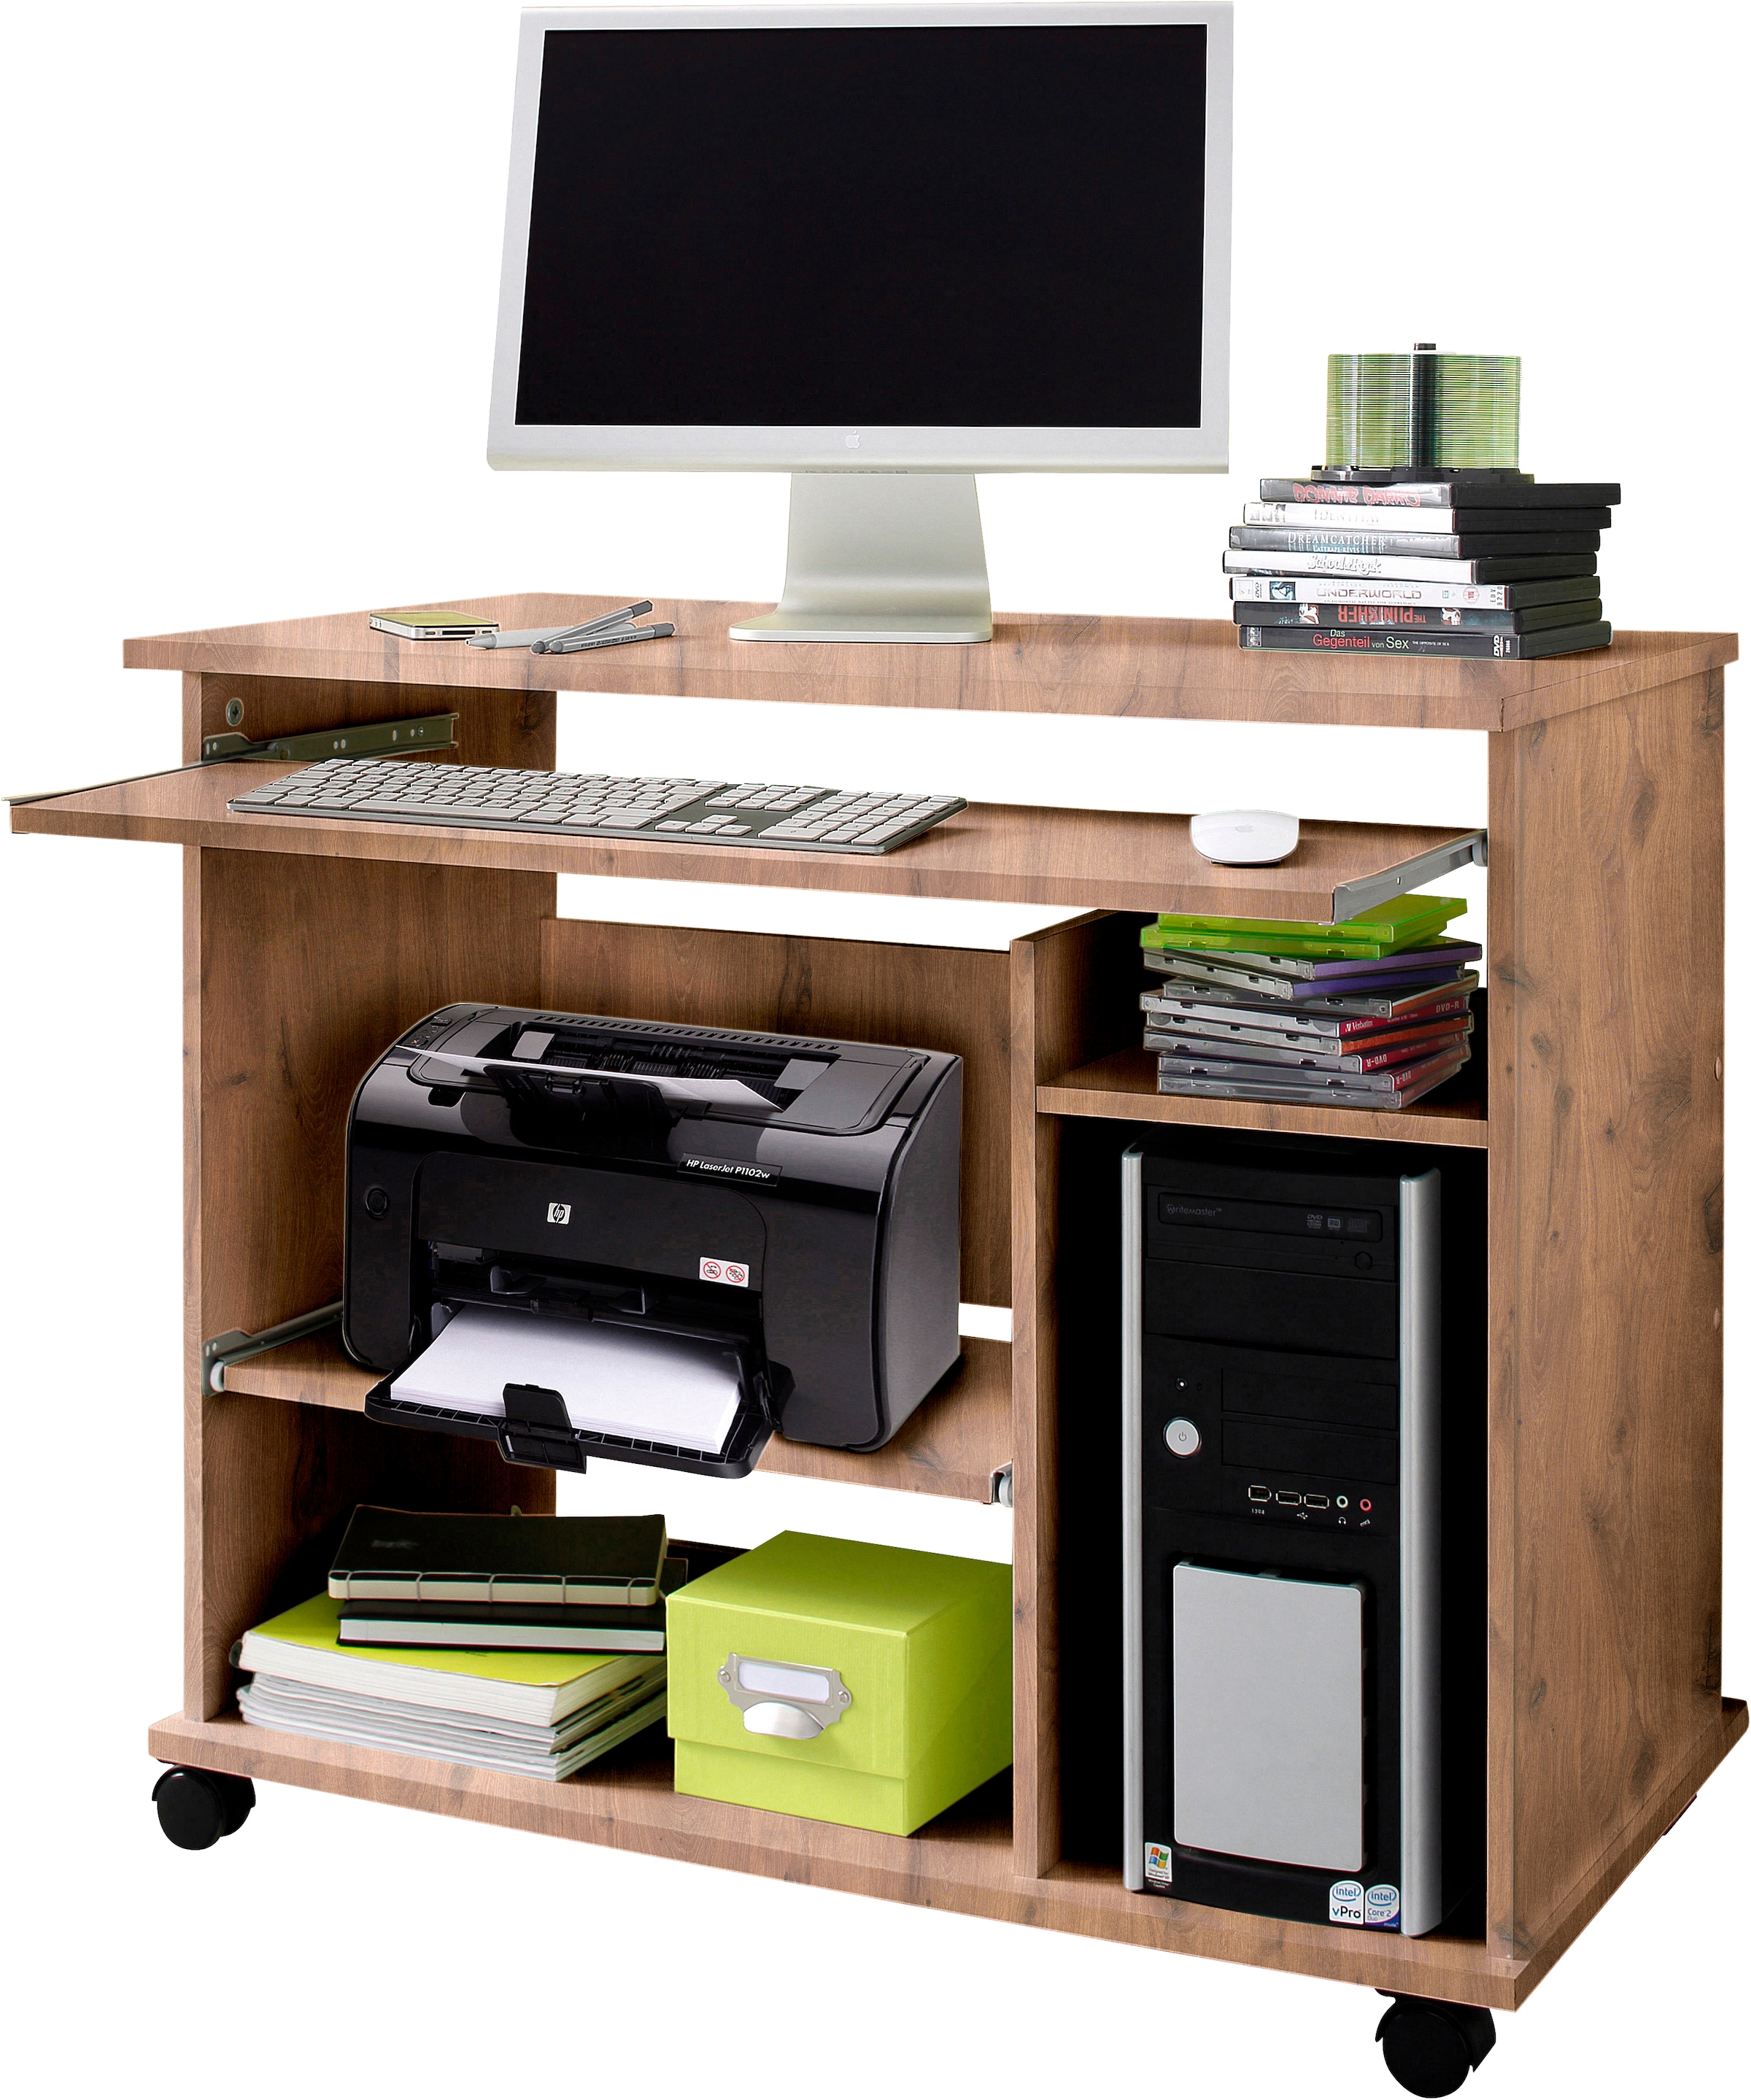 VOGL bequem Home Office Computertisch Möbelfabrik »Compi«, kaufen